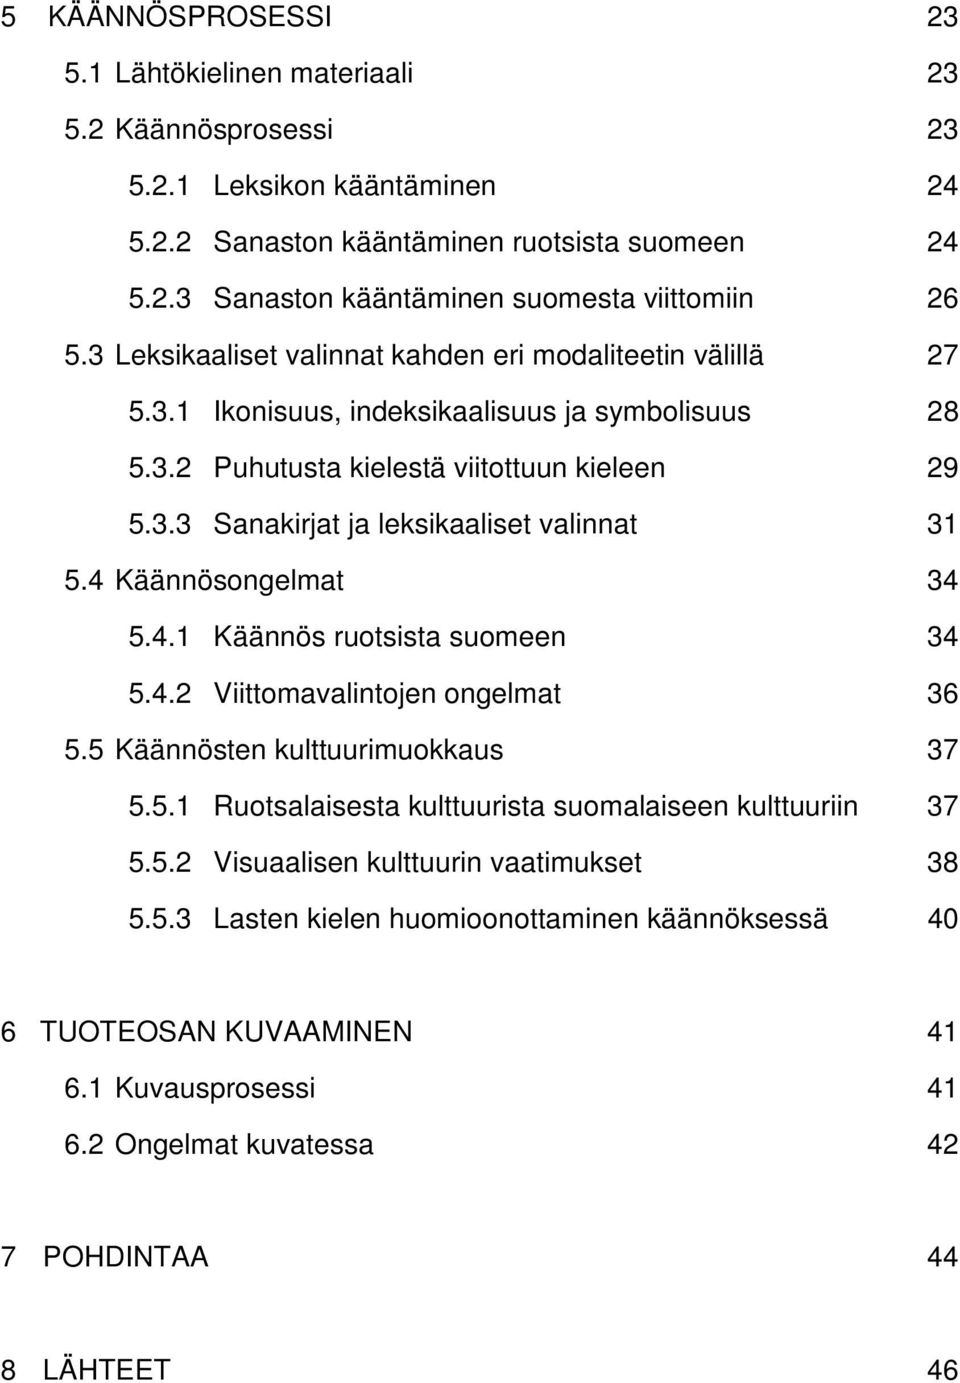 4 Käännösongelmat 34 5.4.1 Käännös ruotsista suomeen 34 5.4.2 Viittomavalintojen ongelmat 36 5.5 Käännösten kulttuurimuokkaus 37 5.5.1 Ruotsalaisesta kulttuurista suomalaiseen kulttuuriin 37 5.5.2 Visuaalisen kulttuurin vaatimukset 38 5.